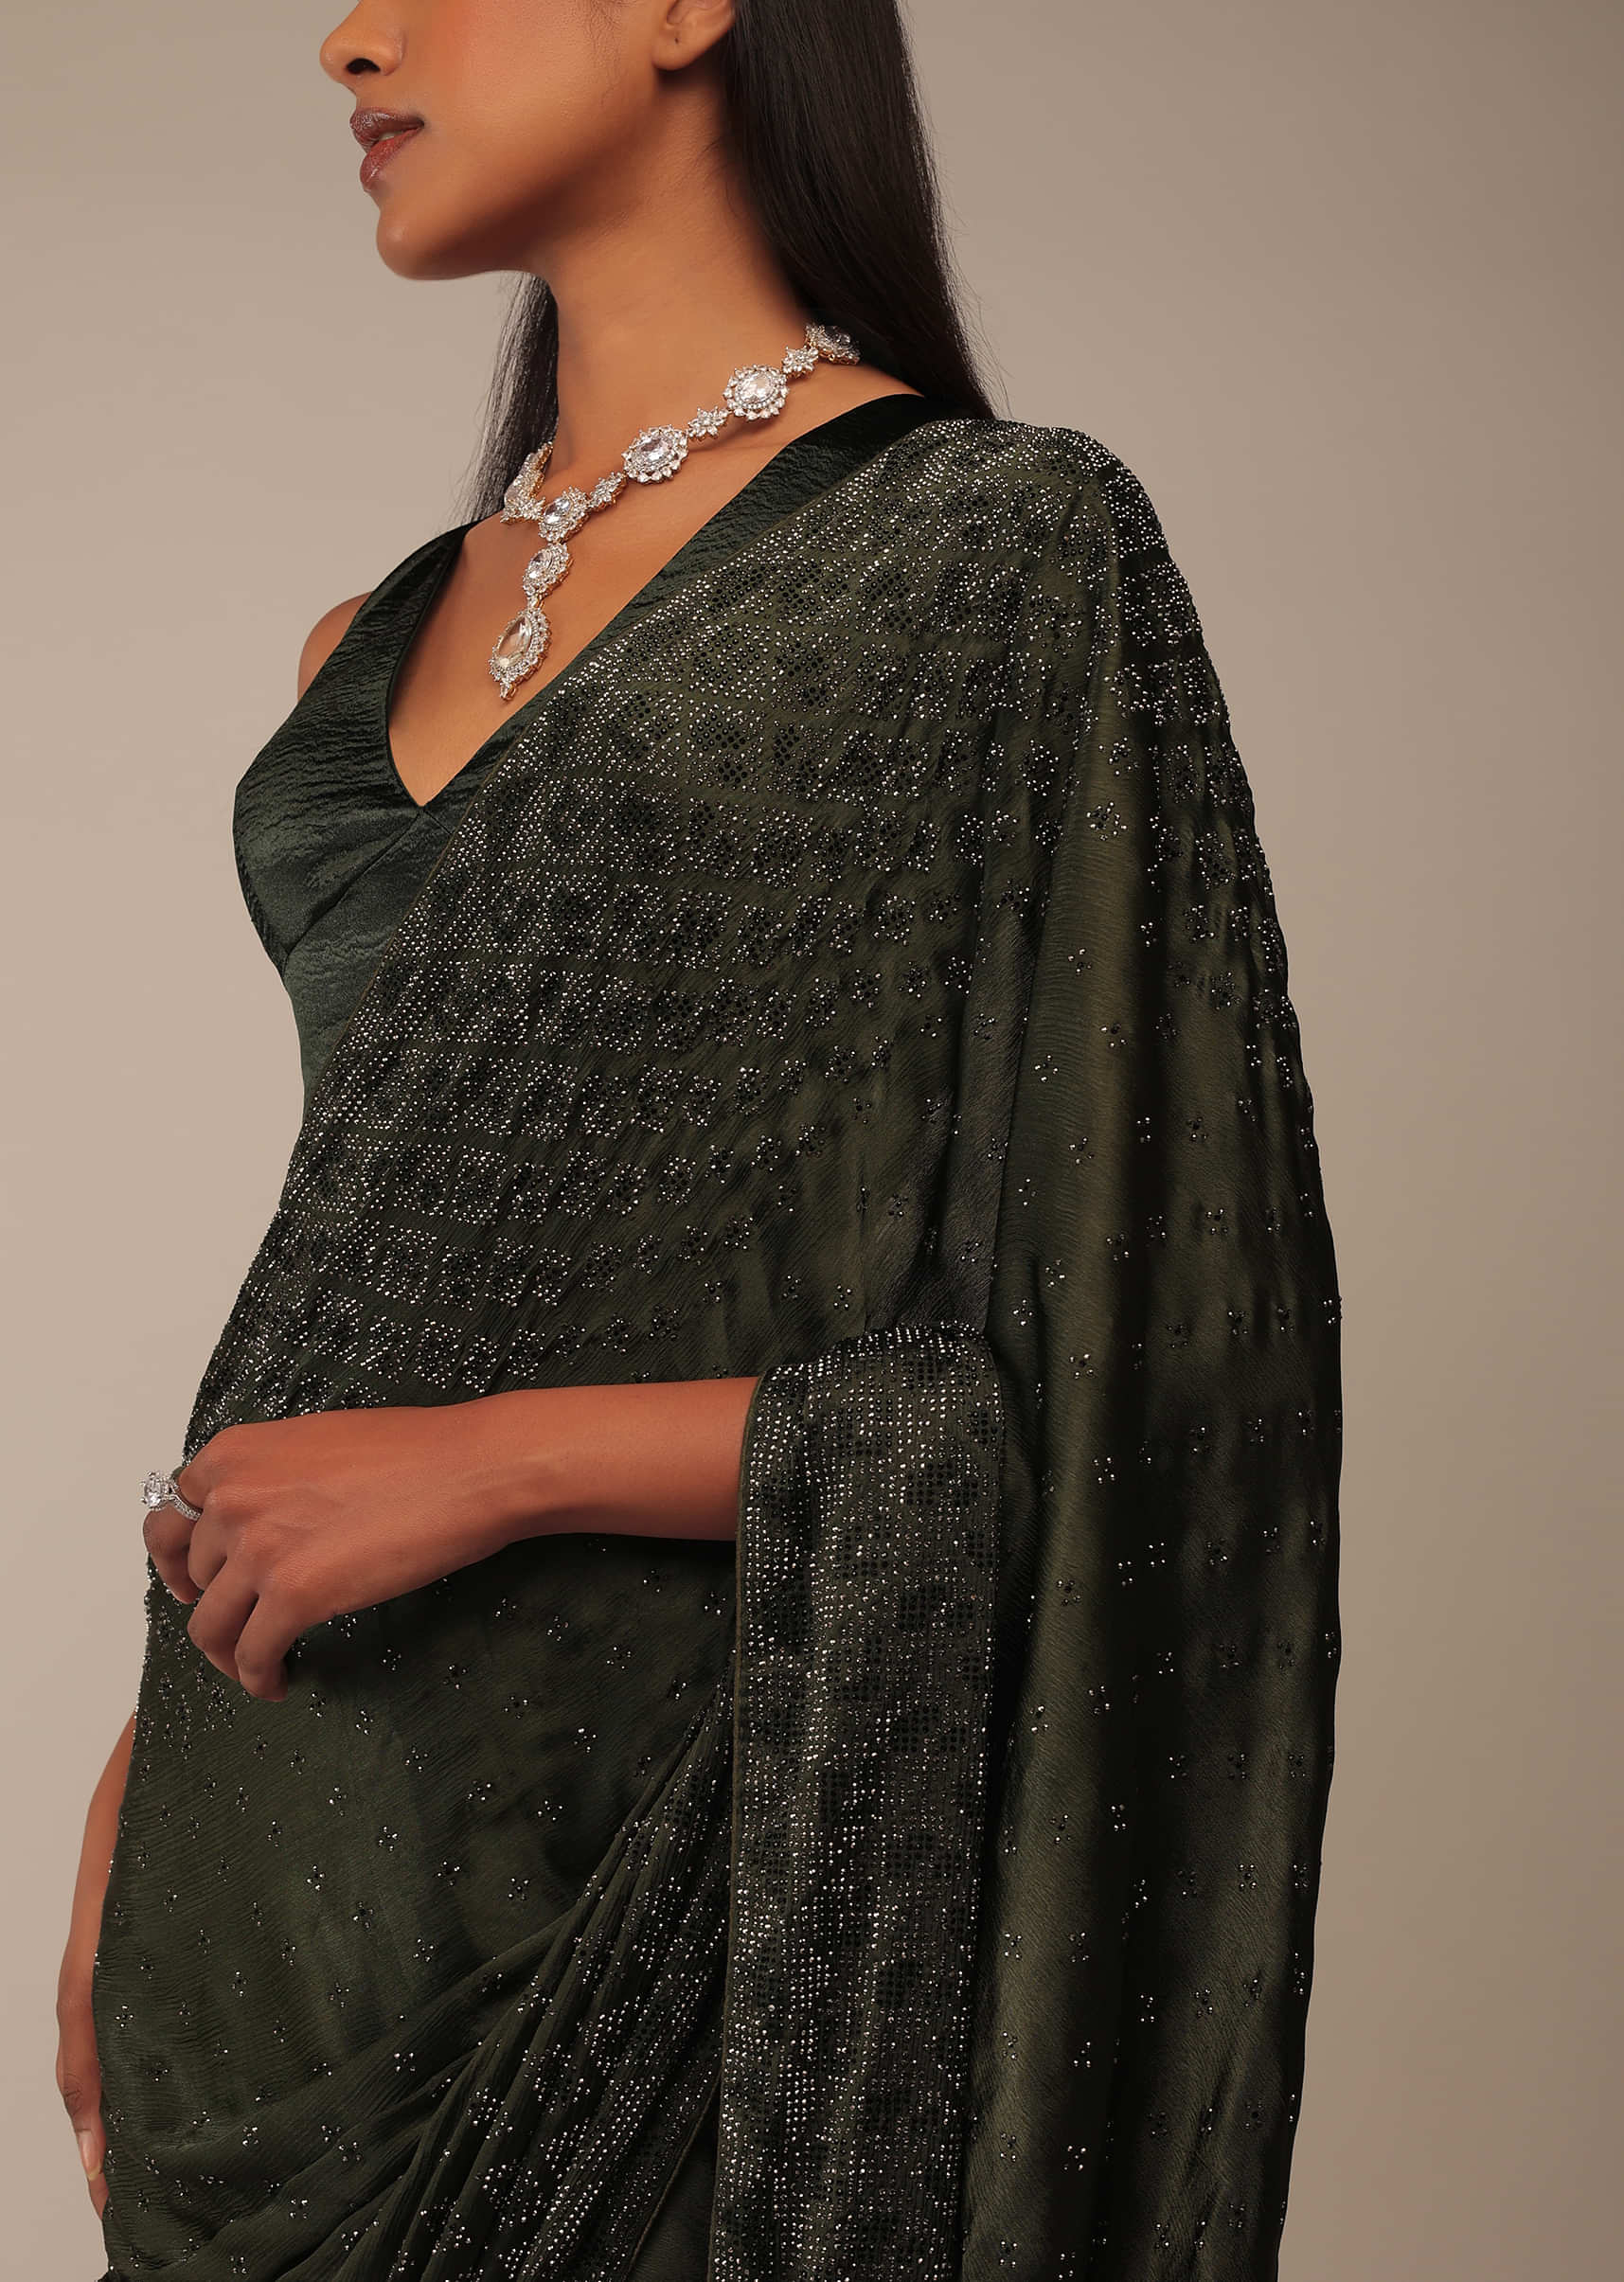 Kombu Green Saree With Stones Embellishment, Crafted In Chiffon With Stones Embellished In Buttis